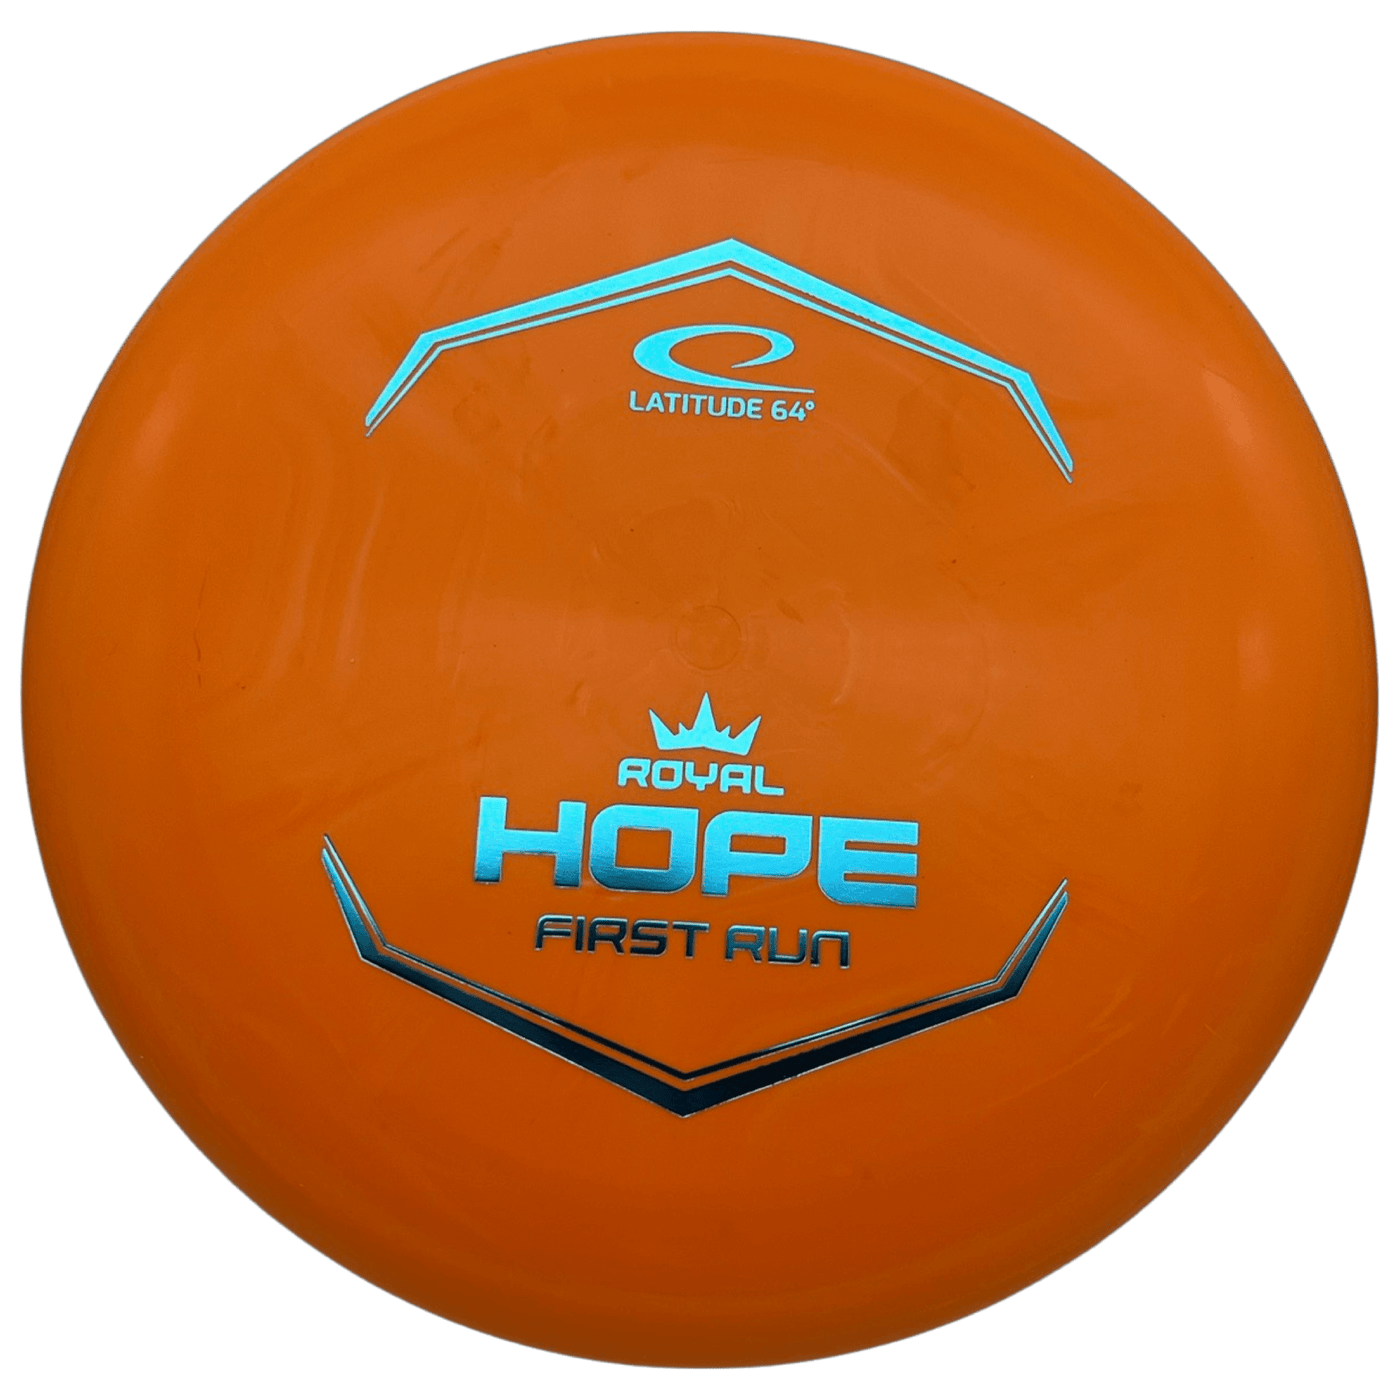 Latitude Putter Orange - Blue - 175g Latitude 64 Royal Sense Hope (First Run)